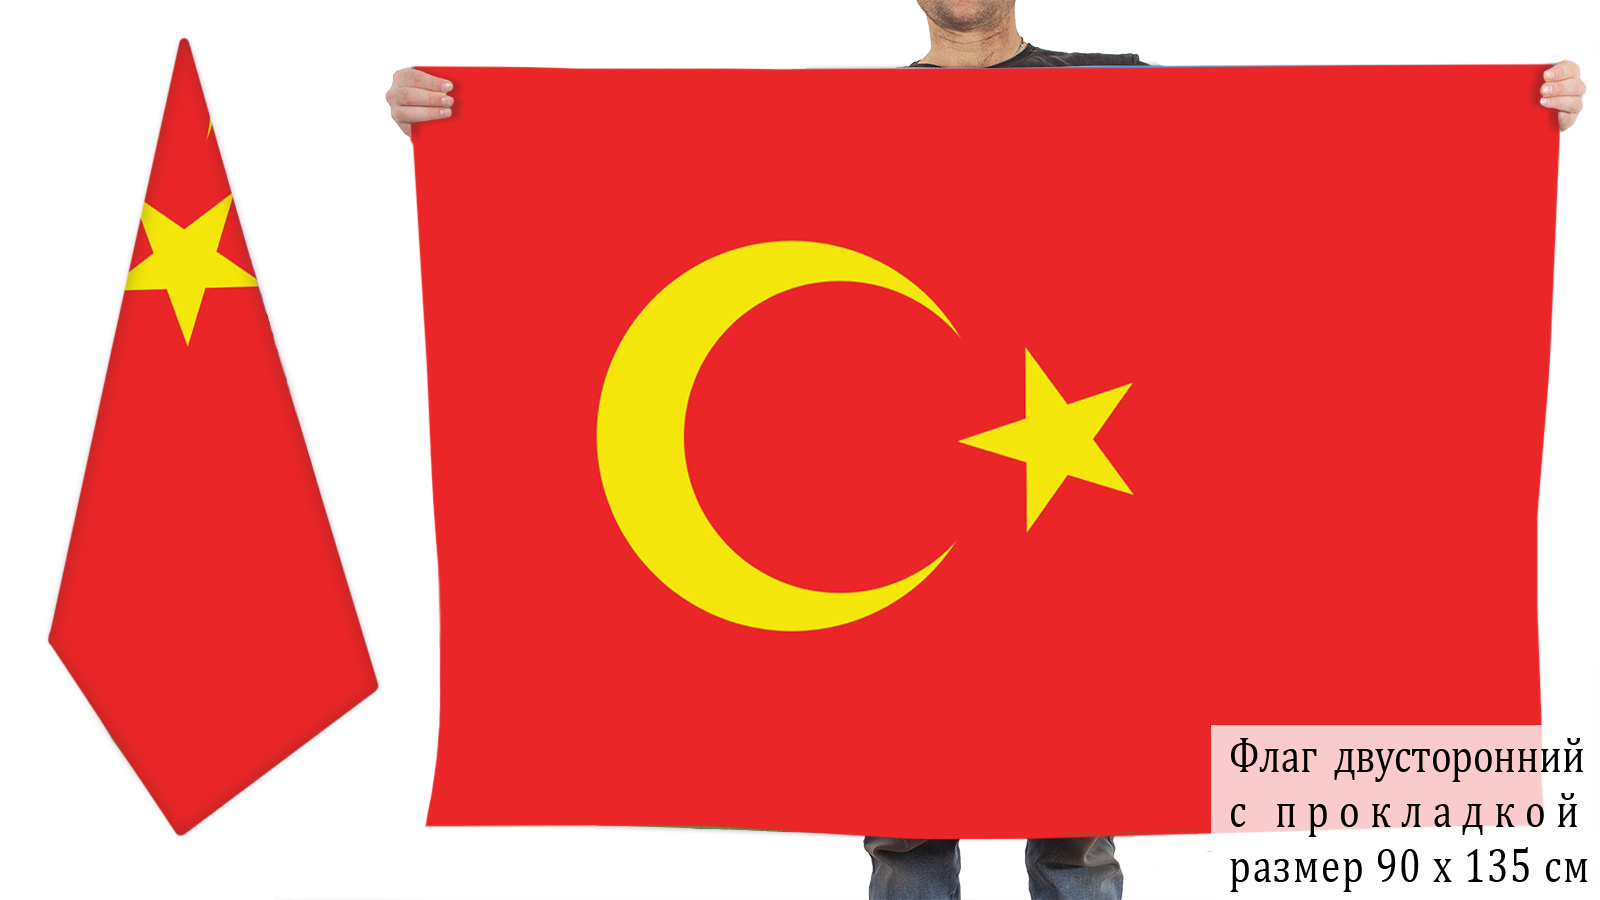 Туркестанская автономия и алашская